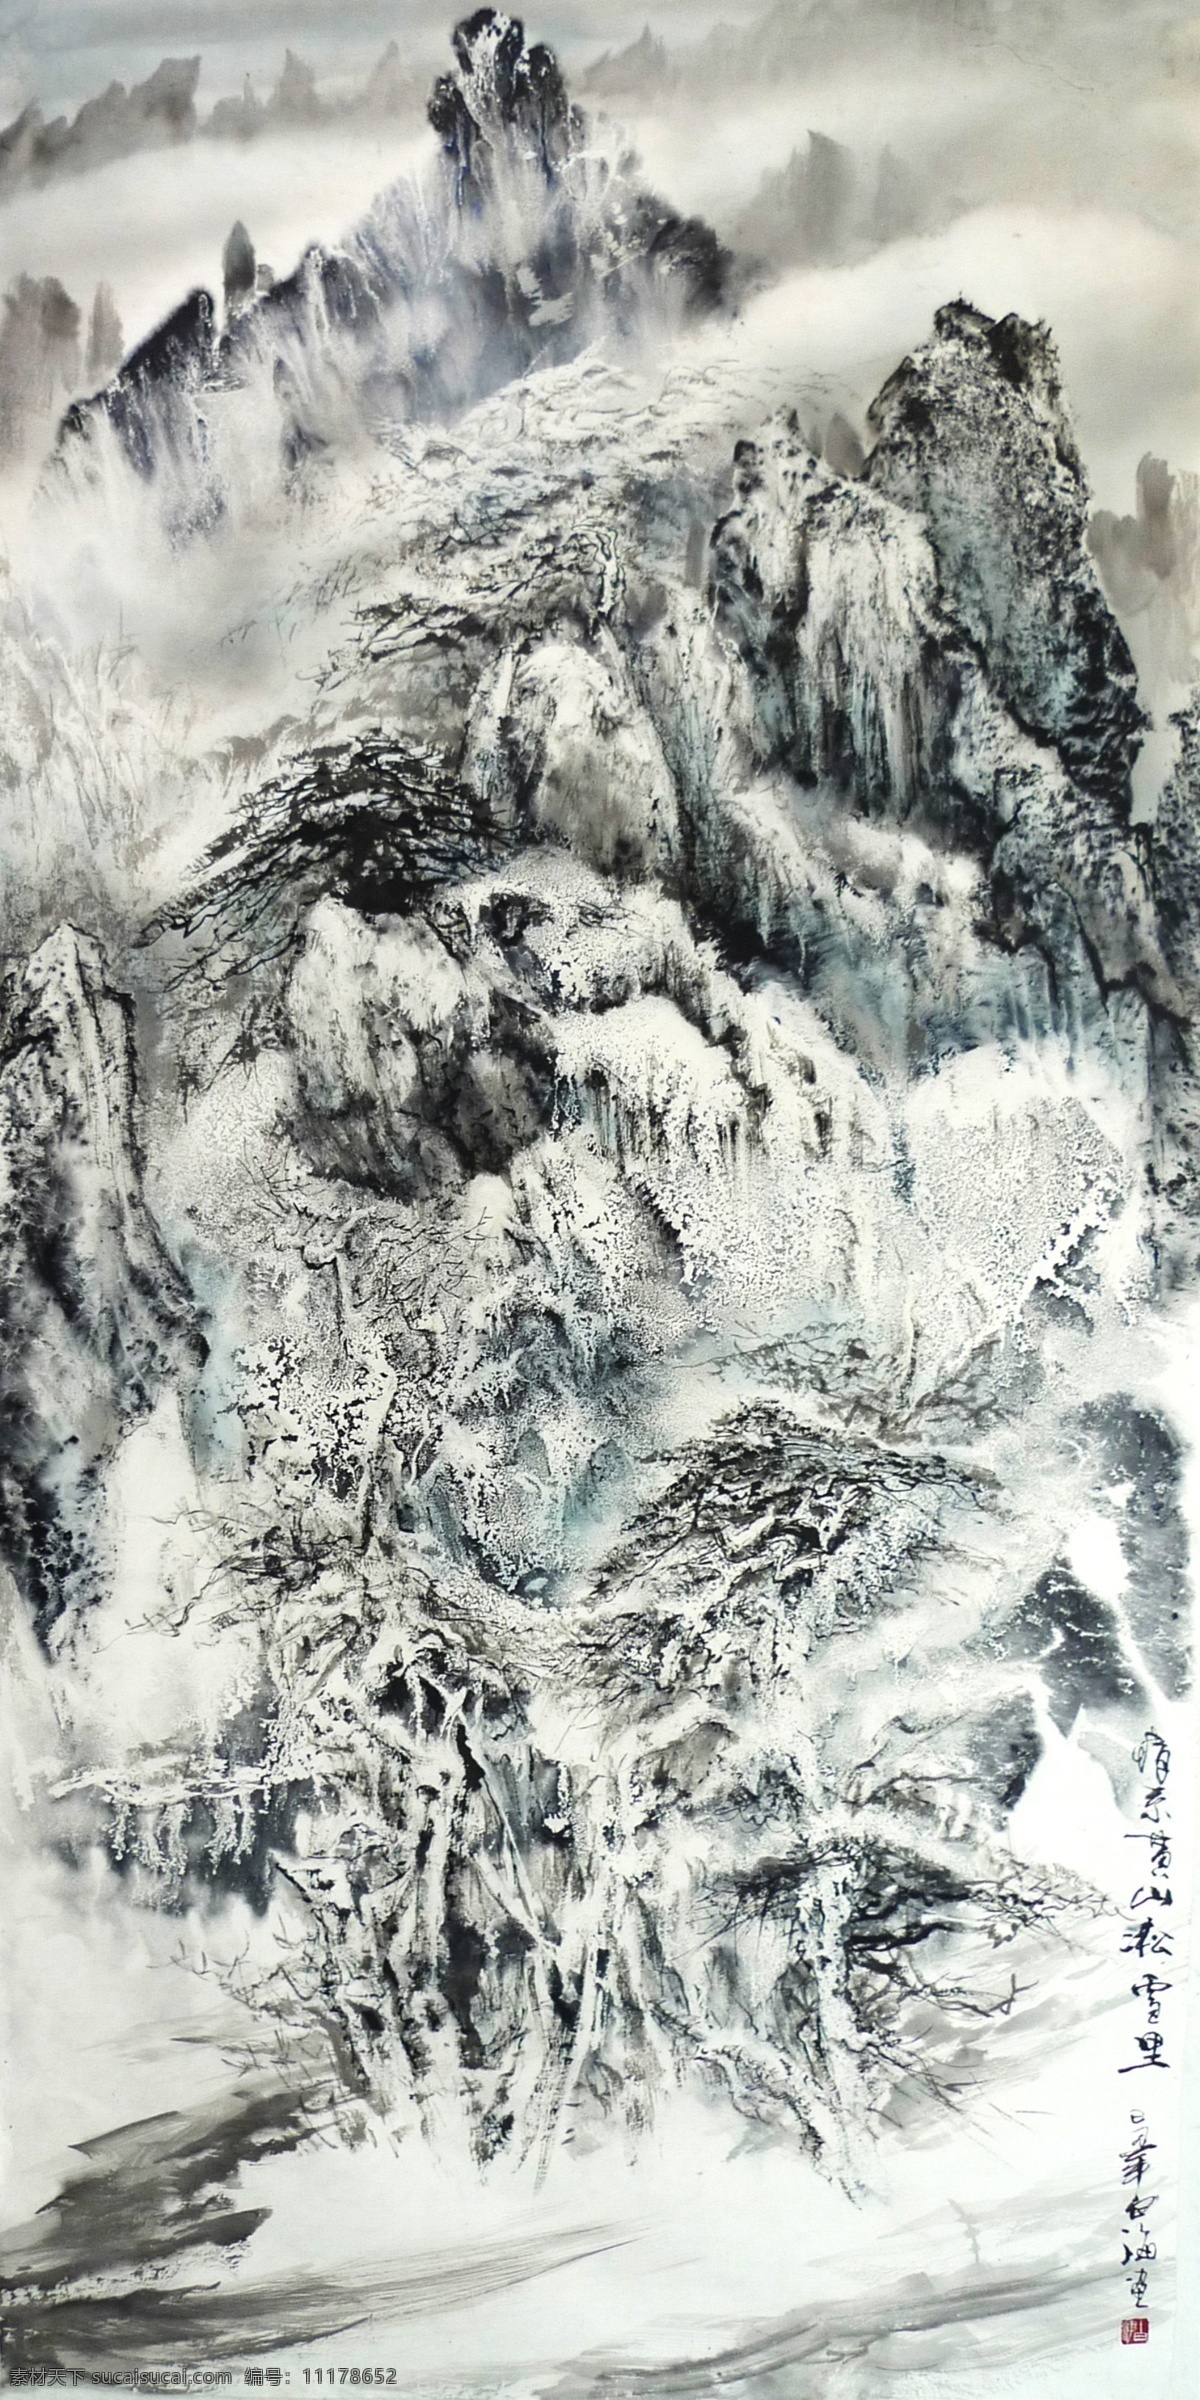 情 系 黄山 凇 雪 里 黄山幻境 山 幻境 白海 雾凇 中国画 雪景 绘画书法 文化艺术